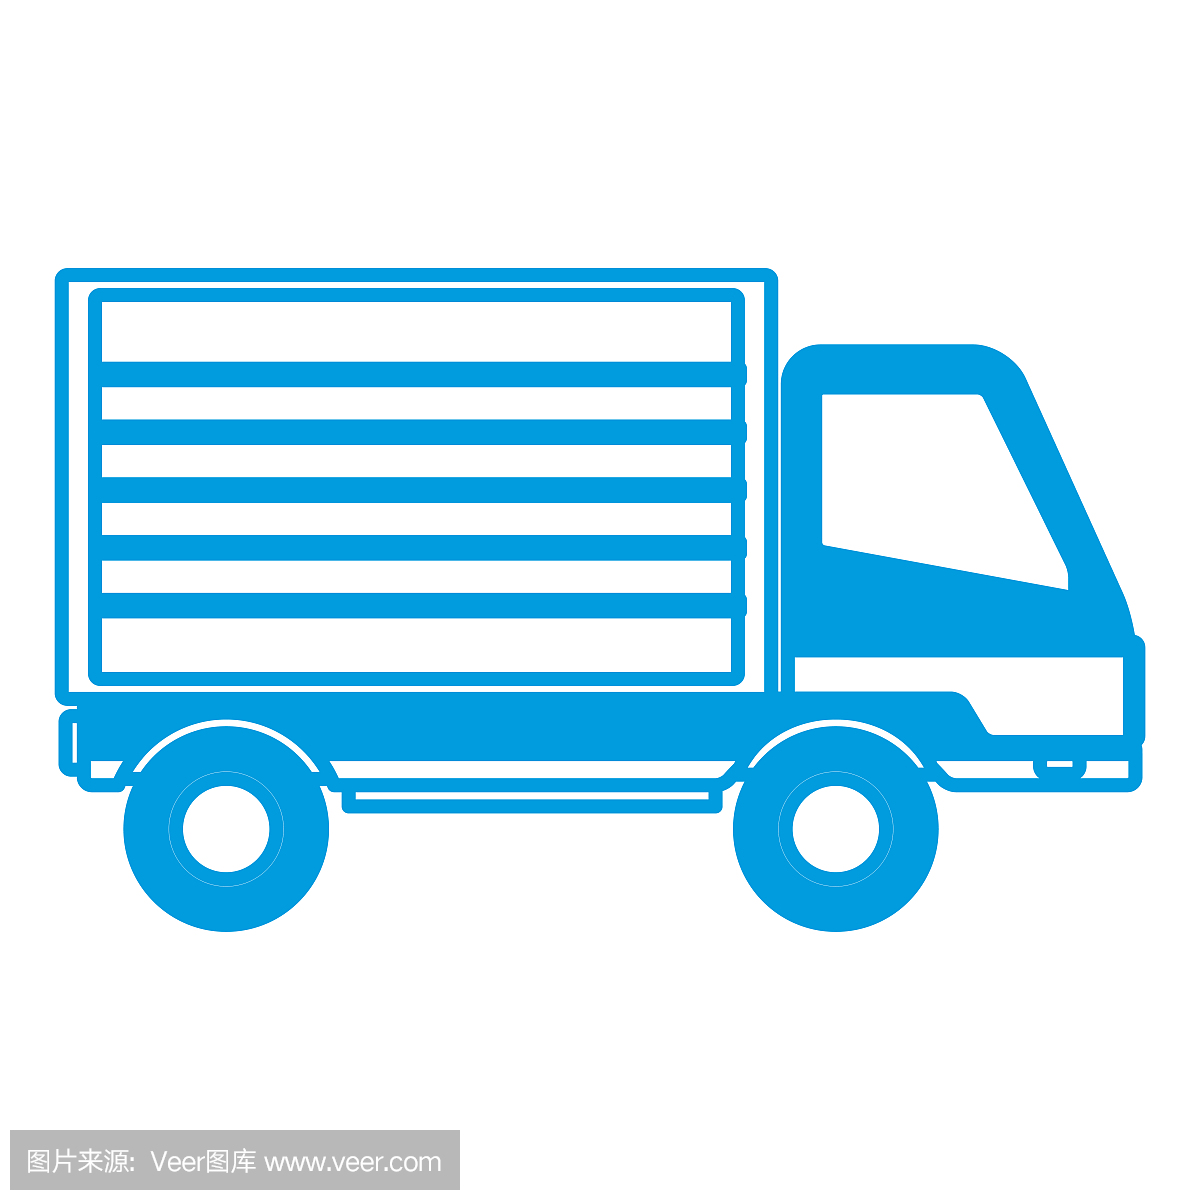 运送货车货车产品运输服务